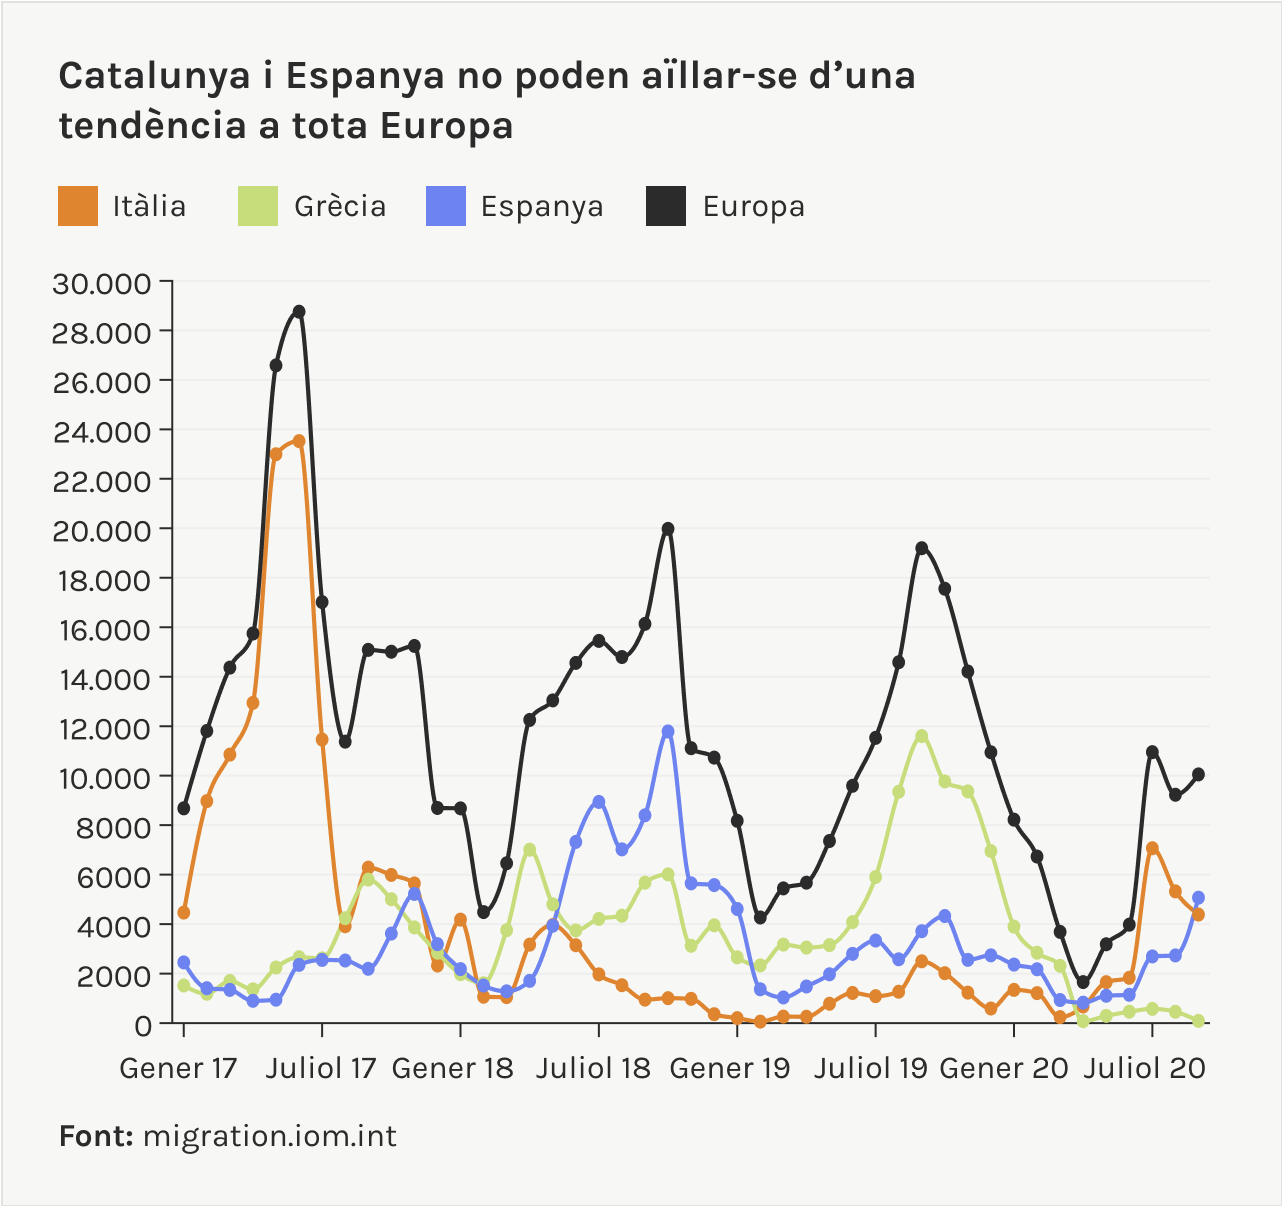 Catalunya i Espanya no poden aillar-se d'una tendència a tota Europa